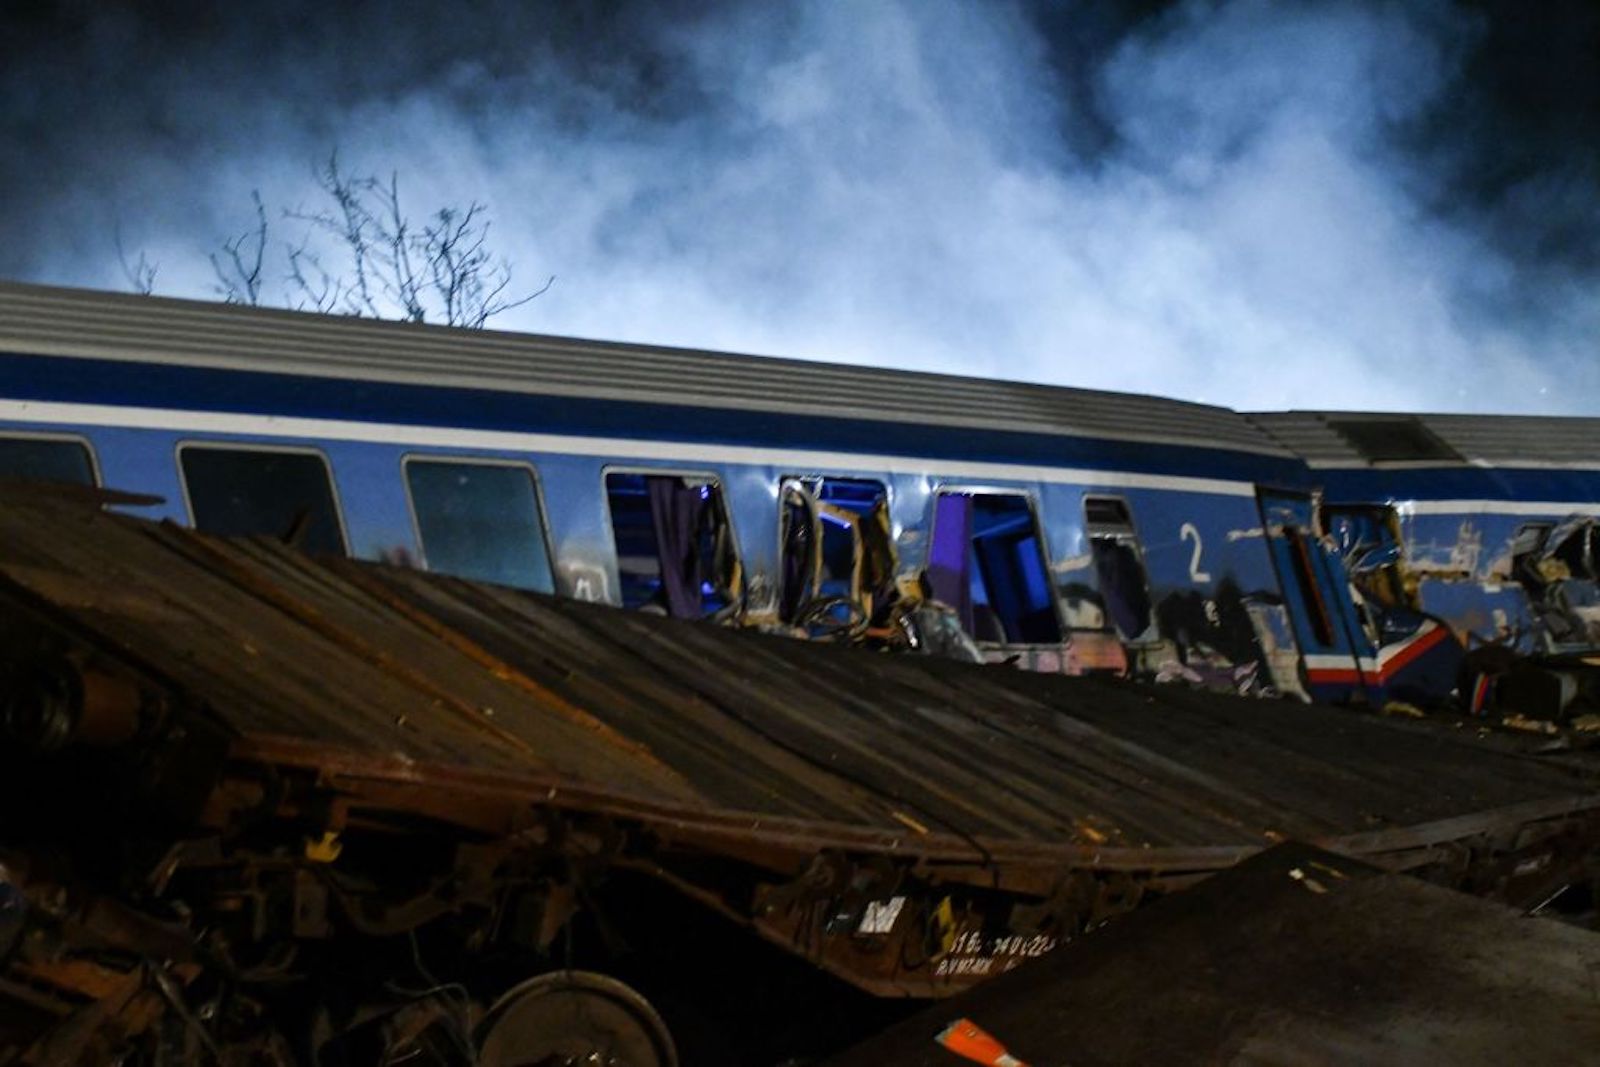 En esta foto se ve el lugar del accidente muestra el choque de frente de los dos trenes. (Crédito: STRINGER/SOOC/AFP via Getty Images)